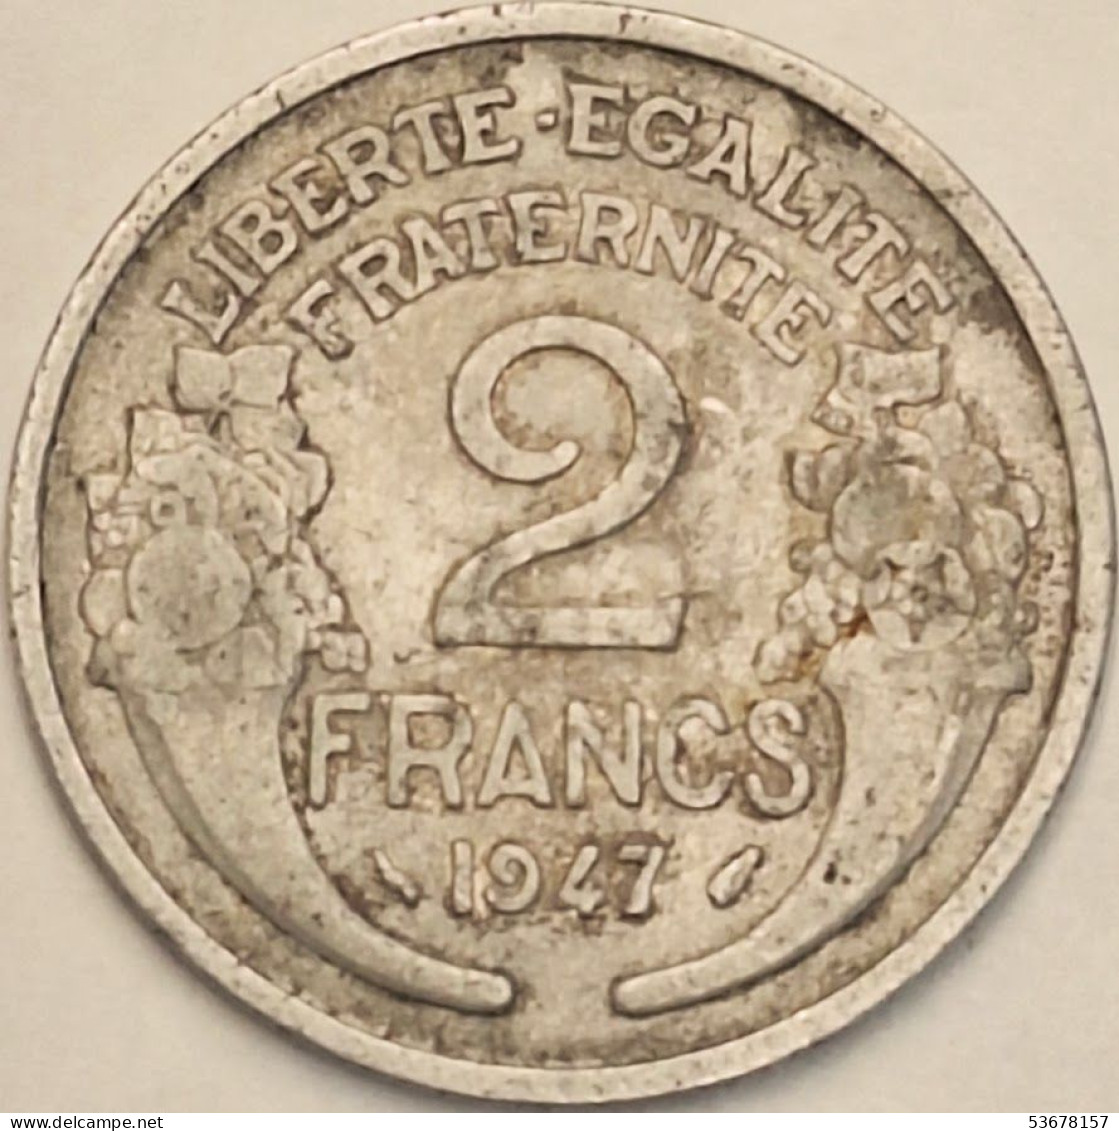 France - 2 Francs 1947, KM# 886a.1 (#4108) - 2 Francs